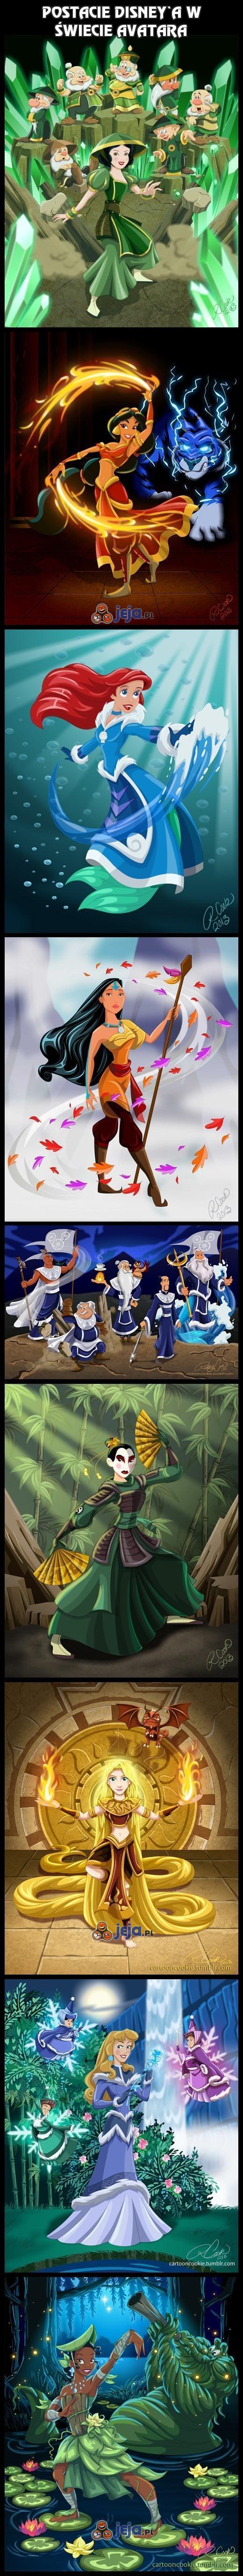 Postacie Disney'a w świecie Avatara